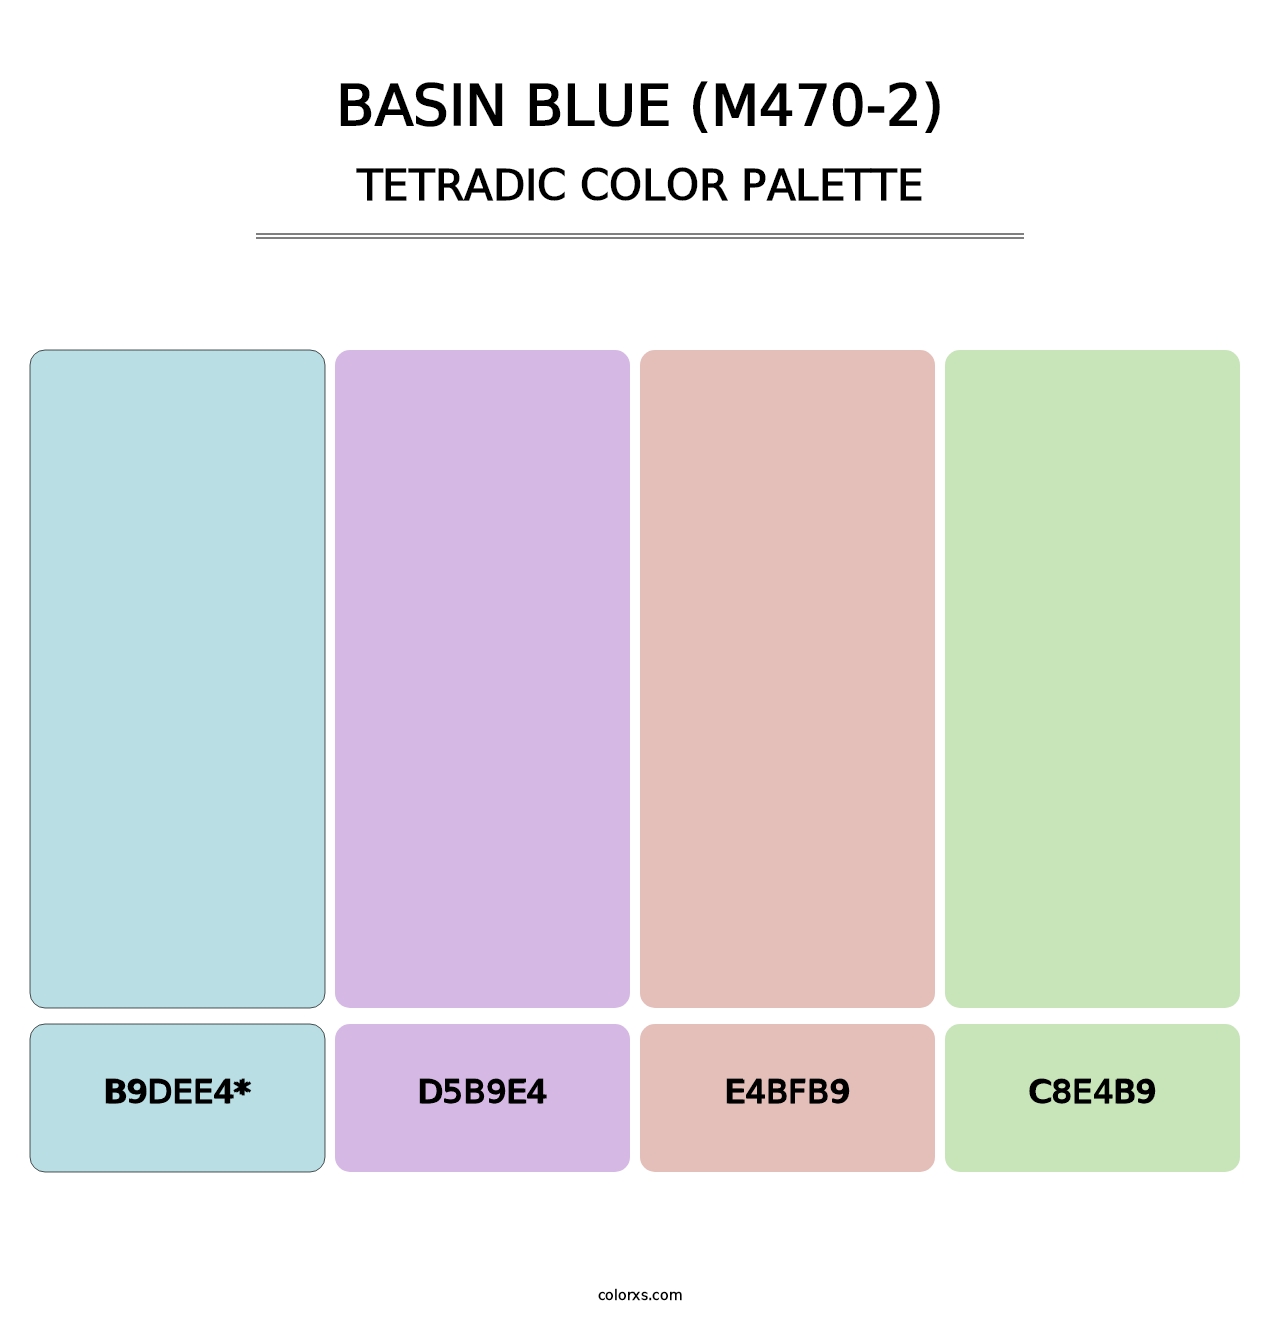 Basin Blue (M470-2) - Tetradic Color Palette